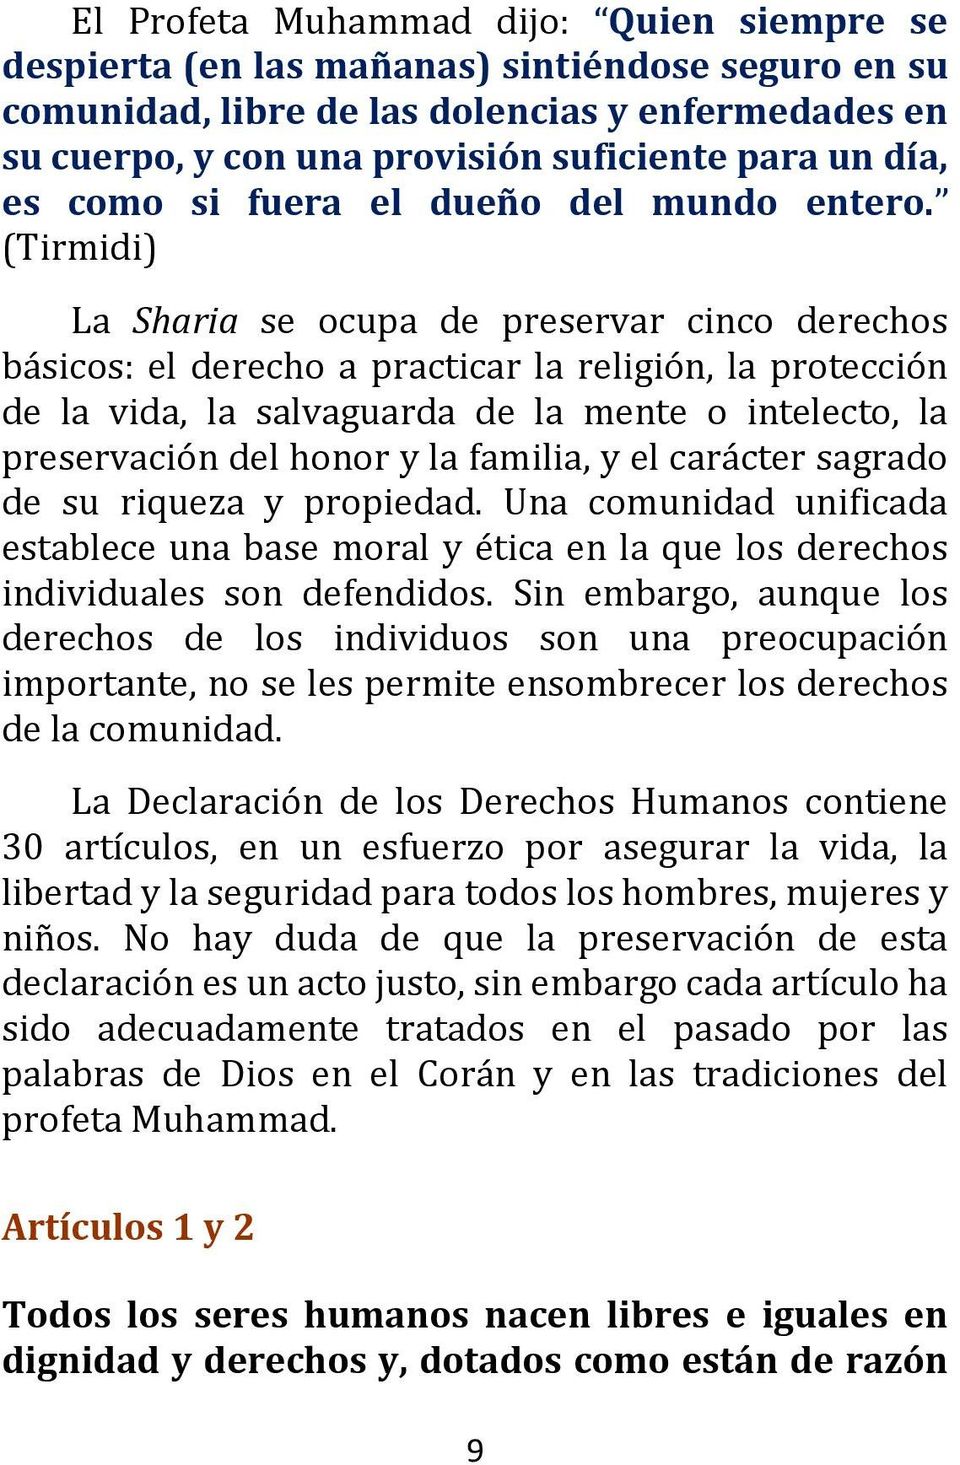 (Tirmidi) La Sharia se ocupa de preservar cinco derechos básicos: el derecho a practicar la religión, la protección de la vida, la salvaguarda de la mente o intelecto, la preservación del honor y la